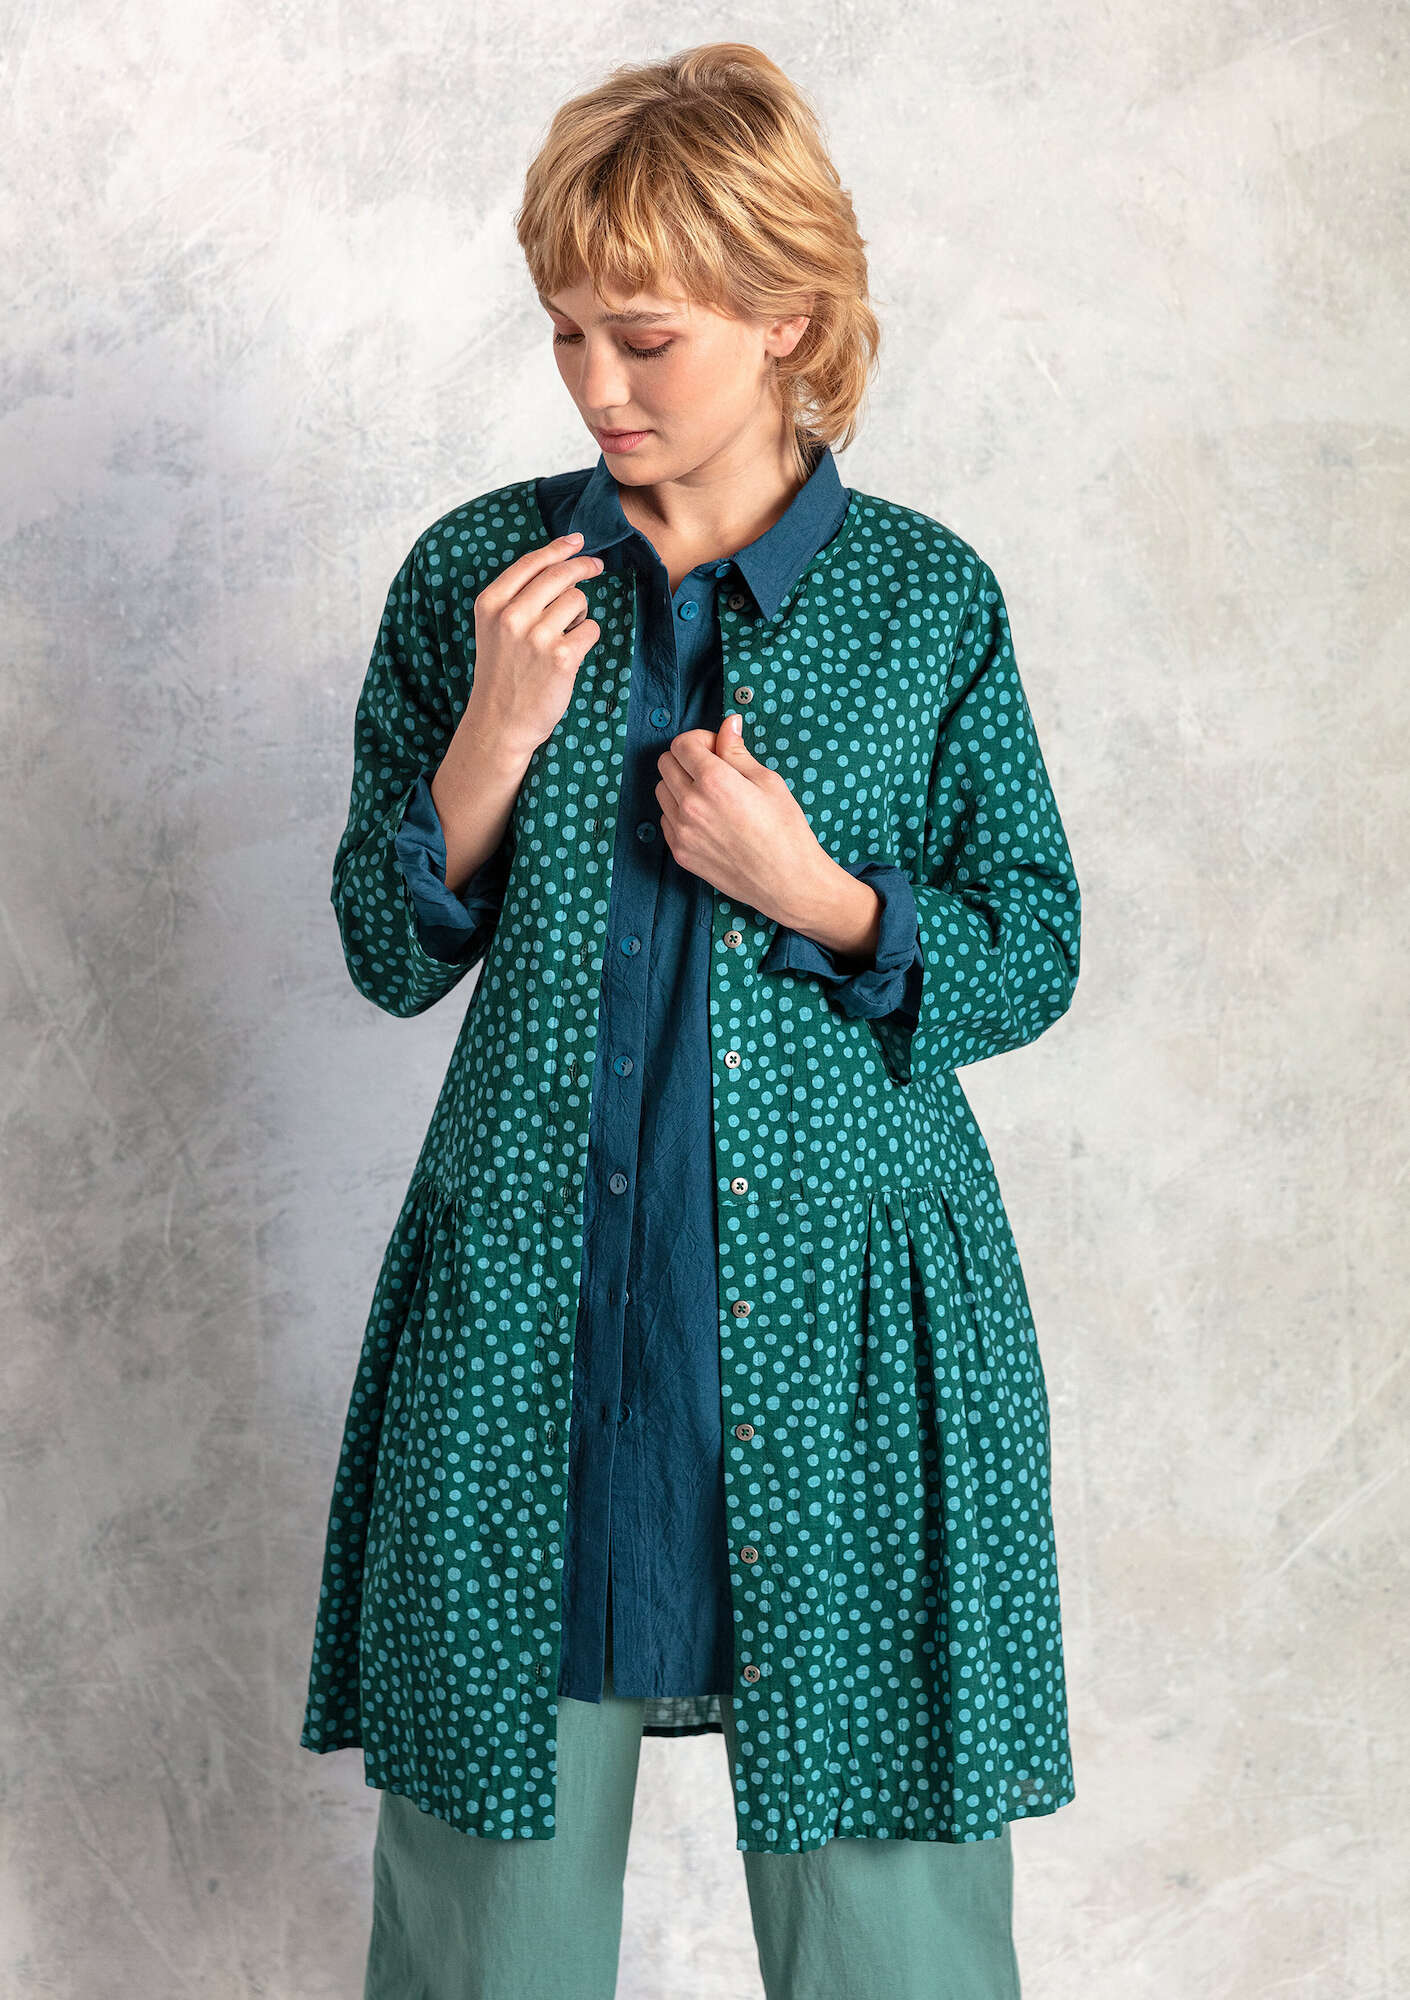 Vævet kjole  Alice  i økologisk bomuld mørkegrøn/mønstret